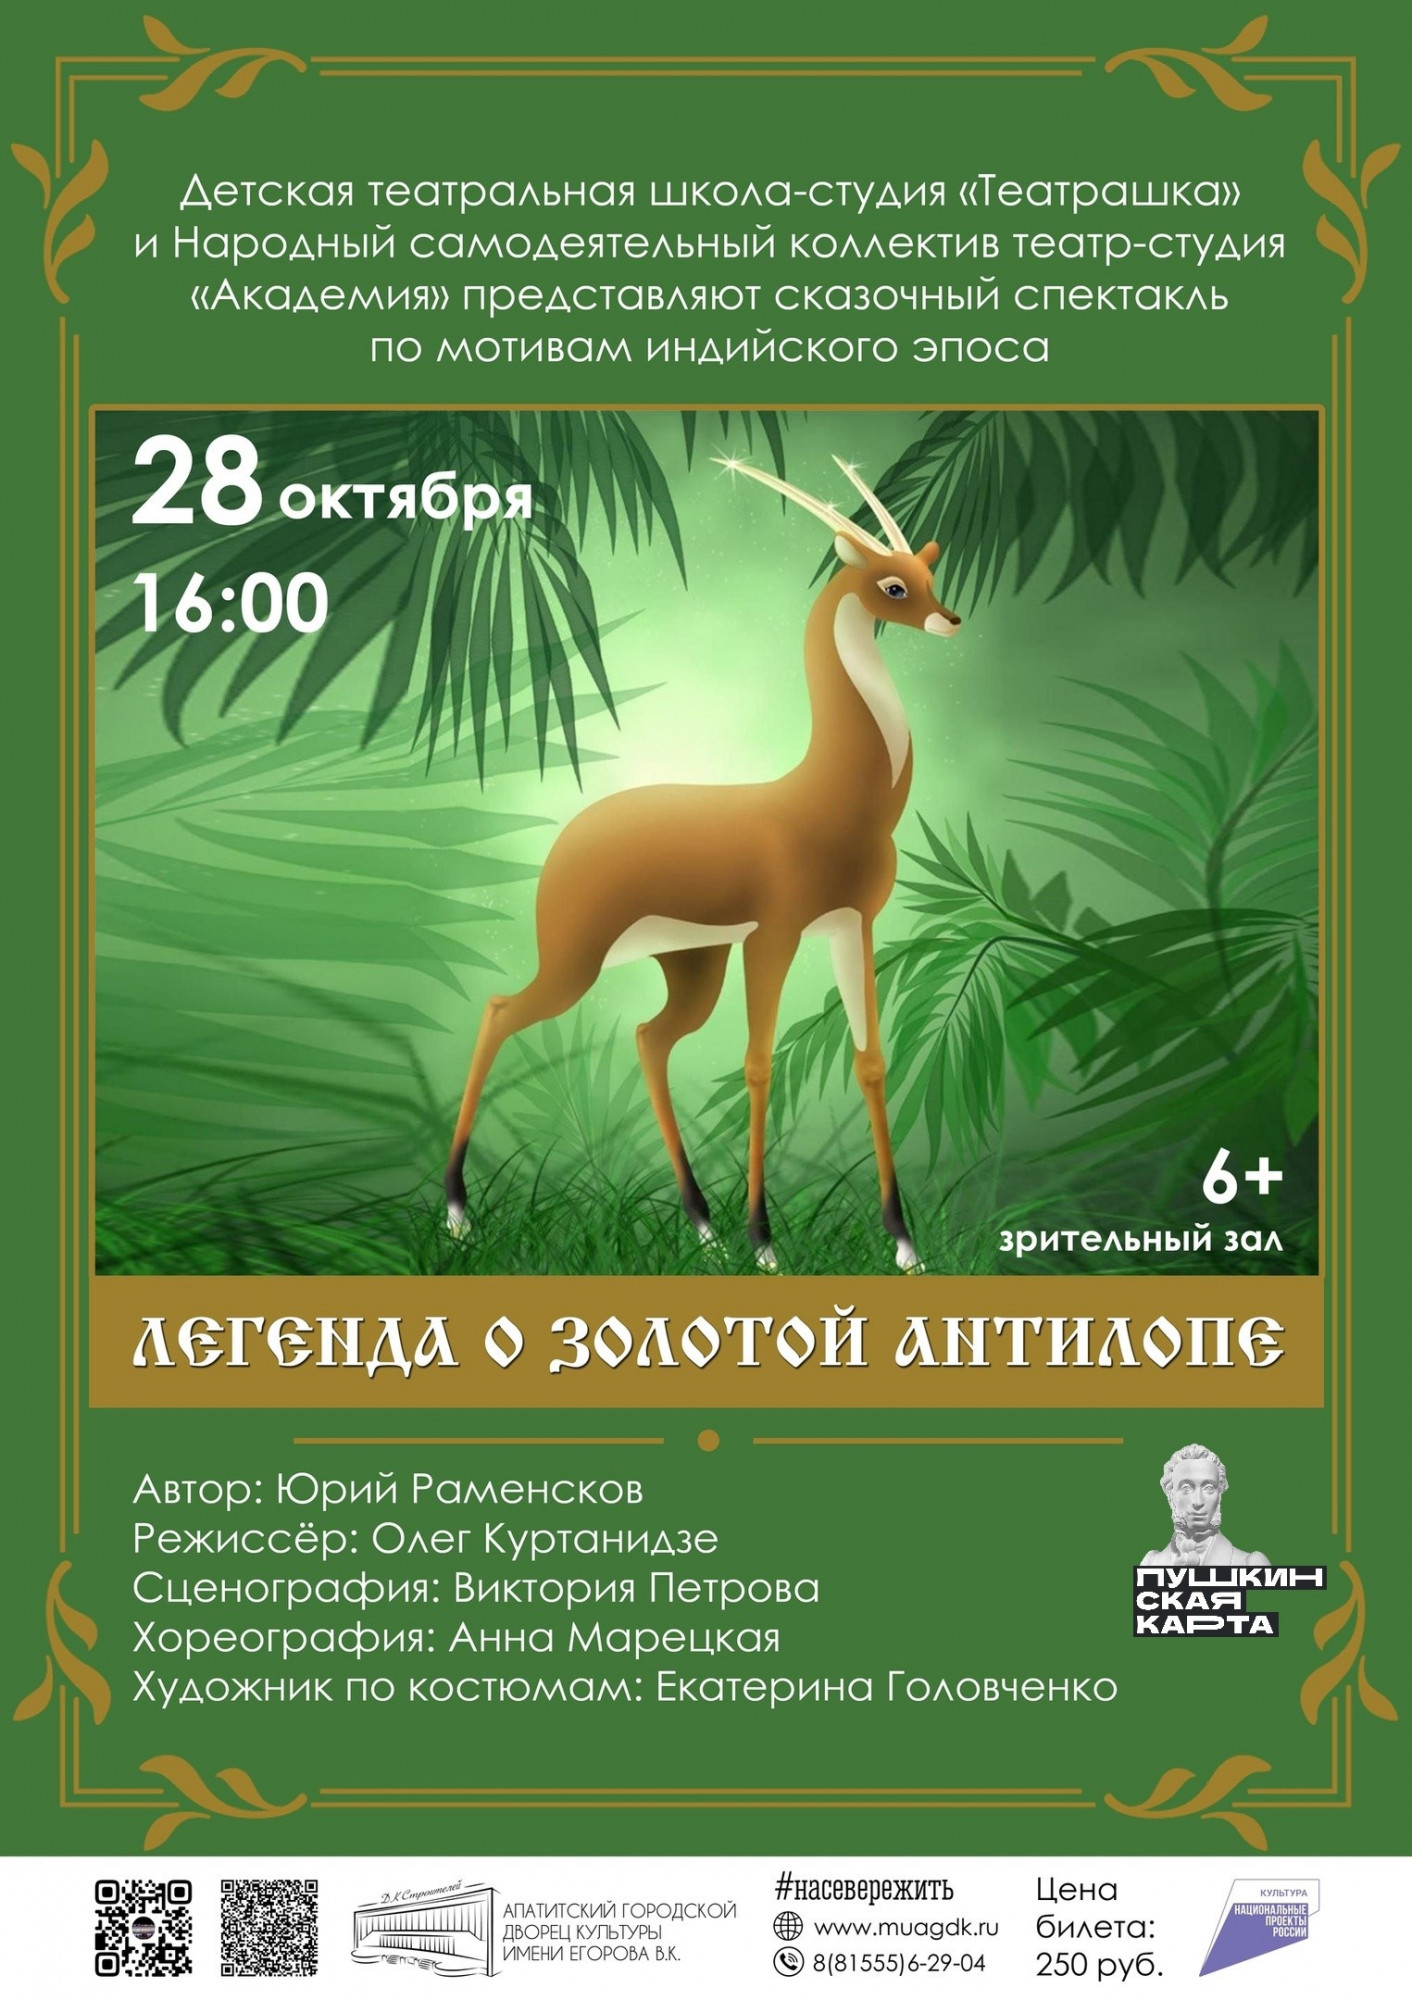 В Апатитах состоится сказочный спектакль «Легенда о Золотой Антилопе»